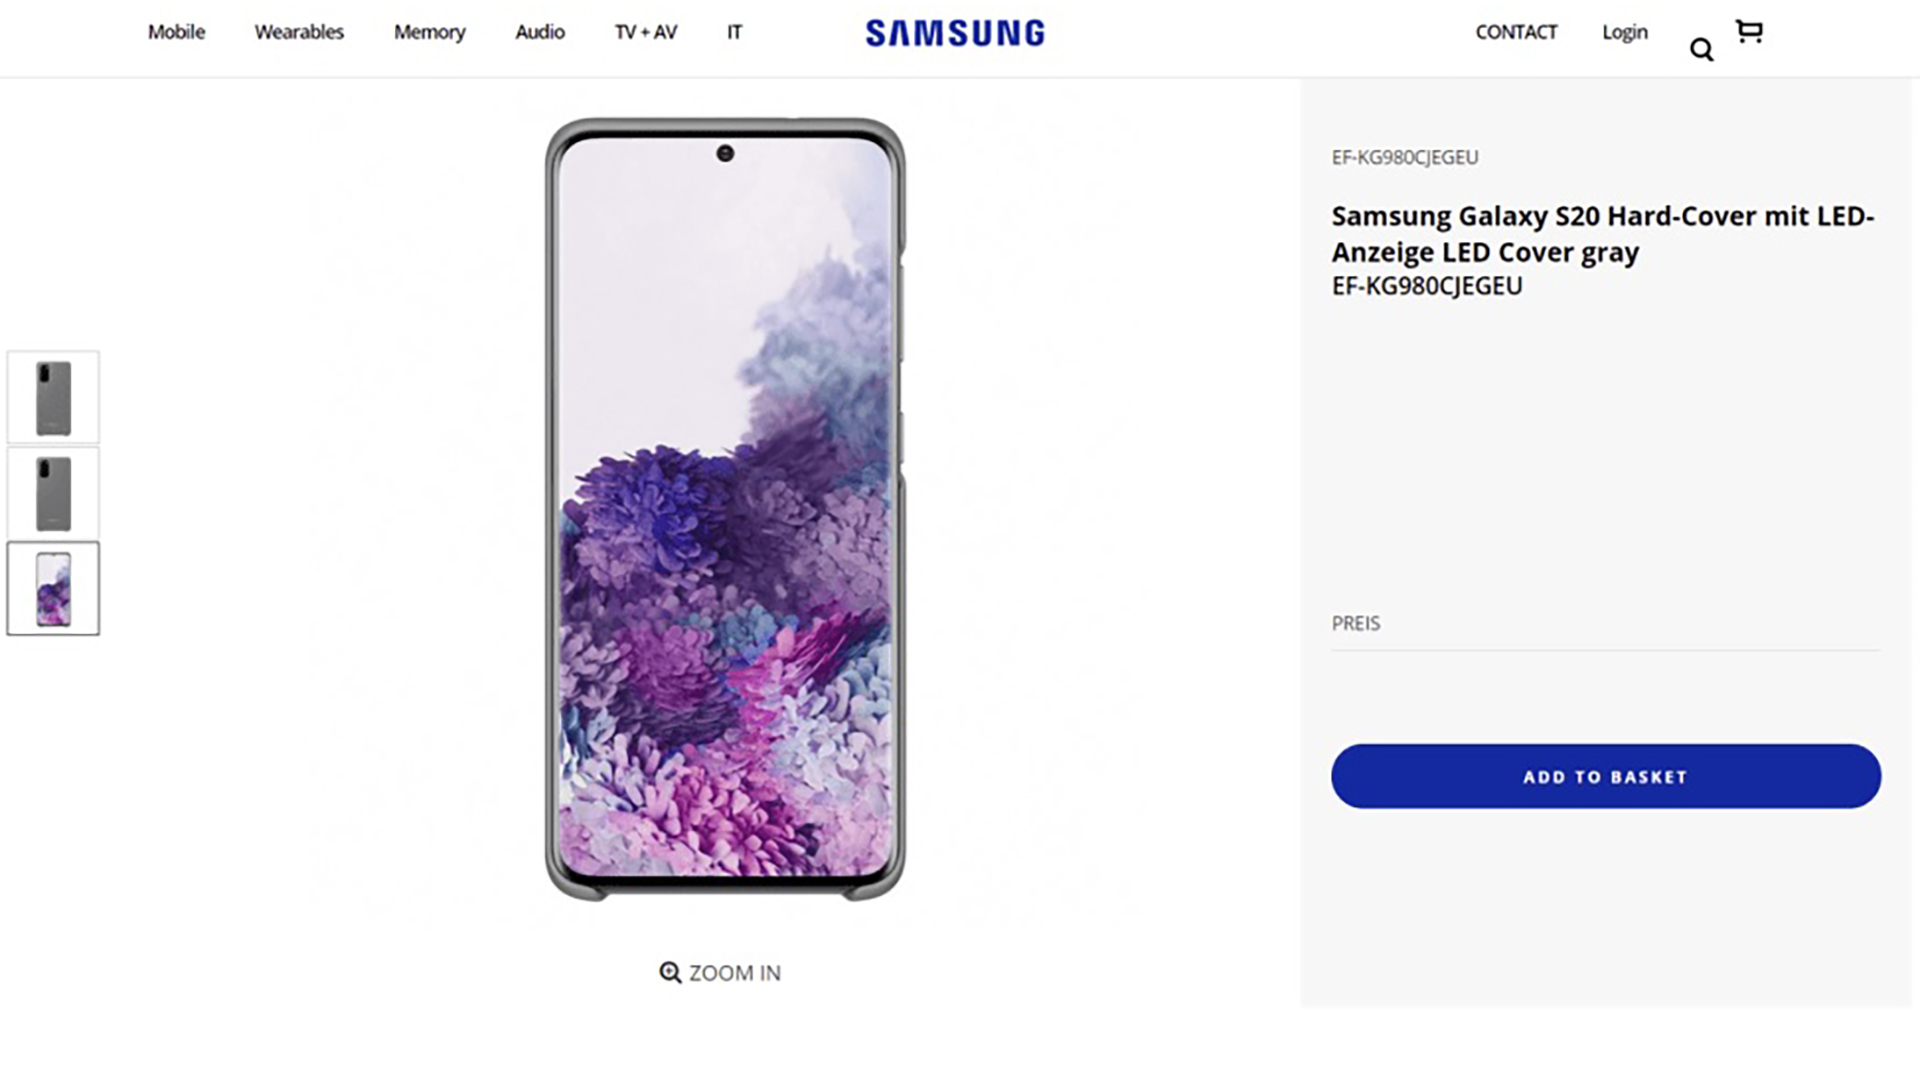 Samsung Galaxy S20 Website Leak Front